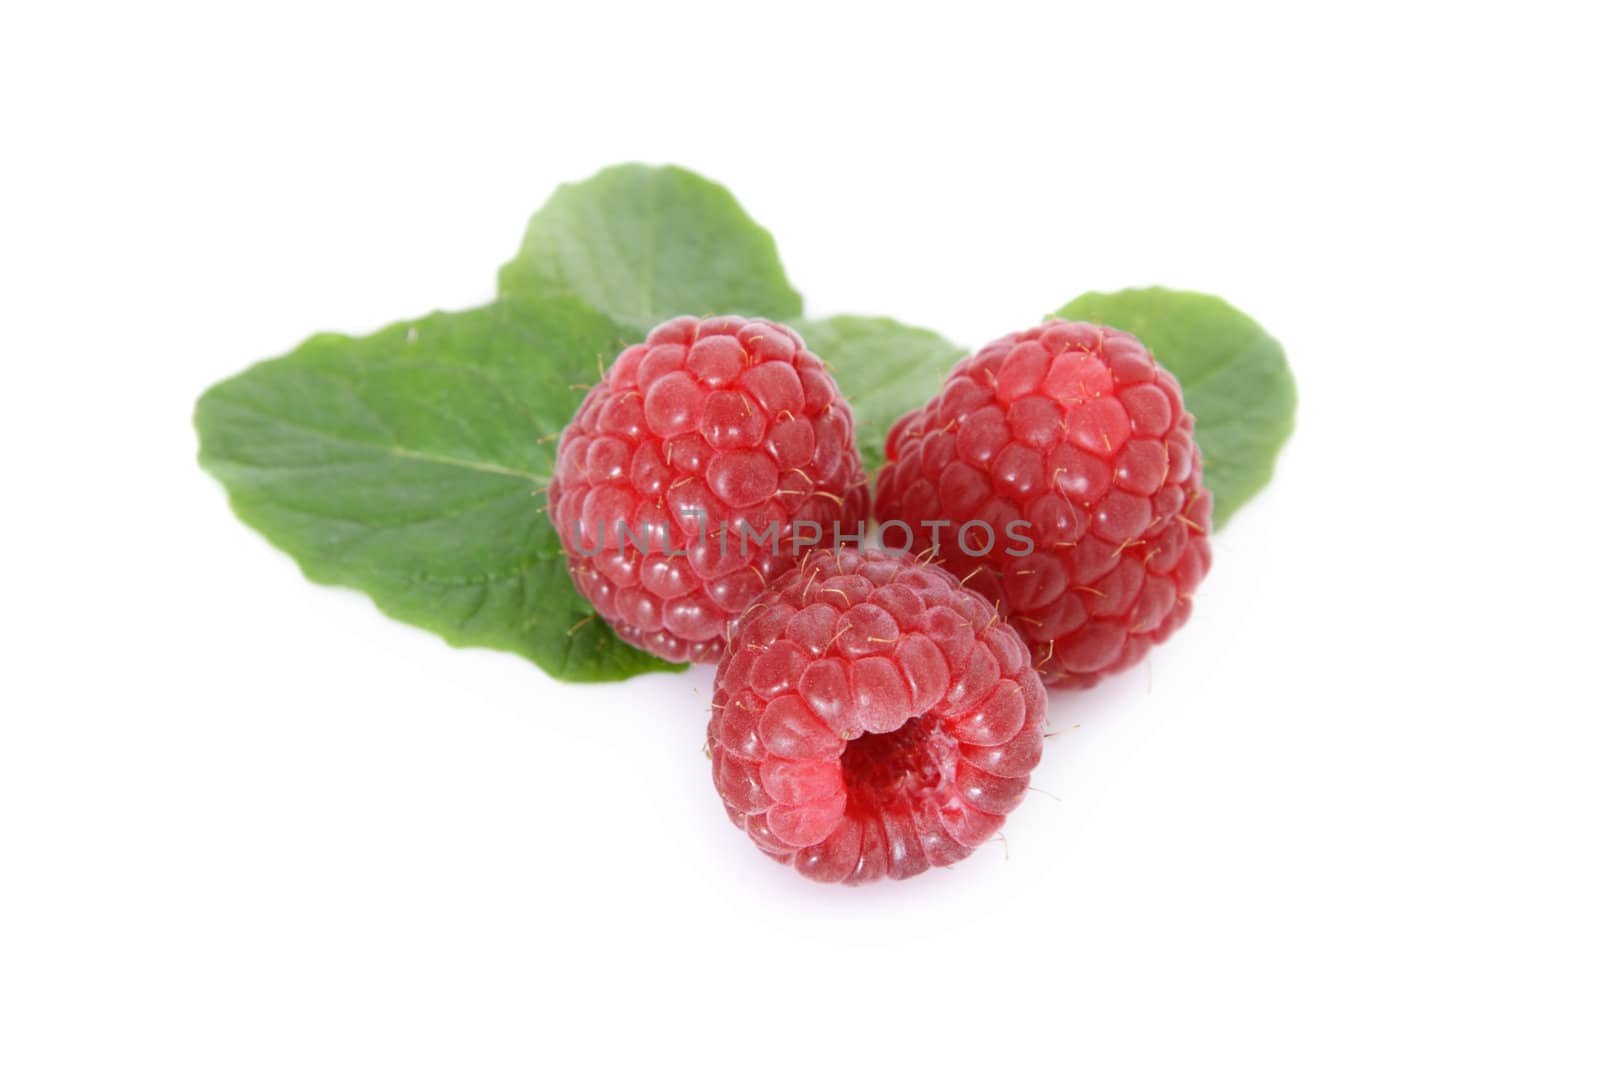 Raspberries by kaarsten